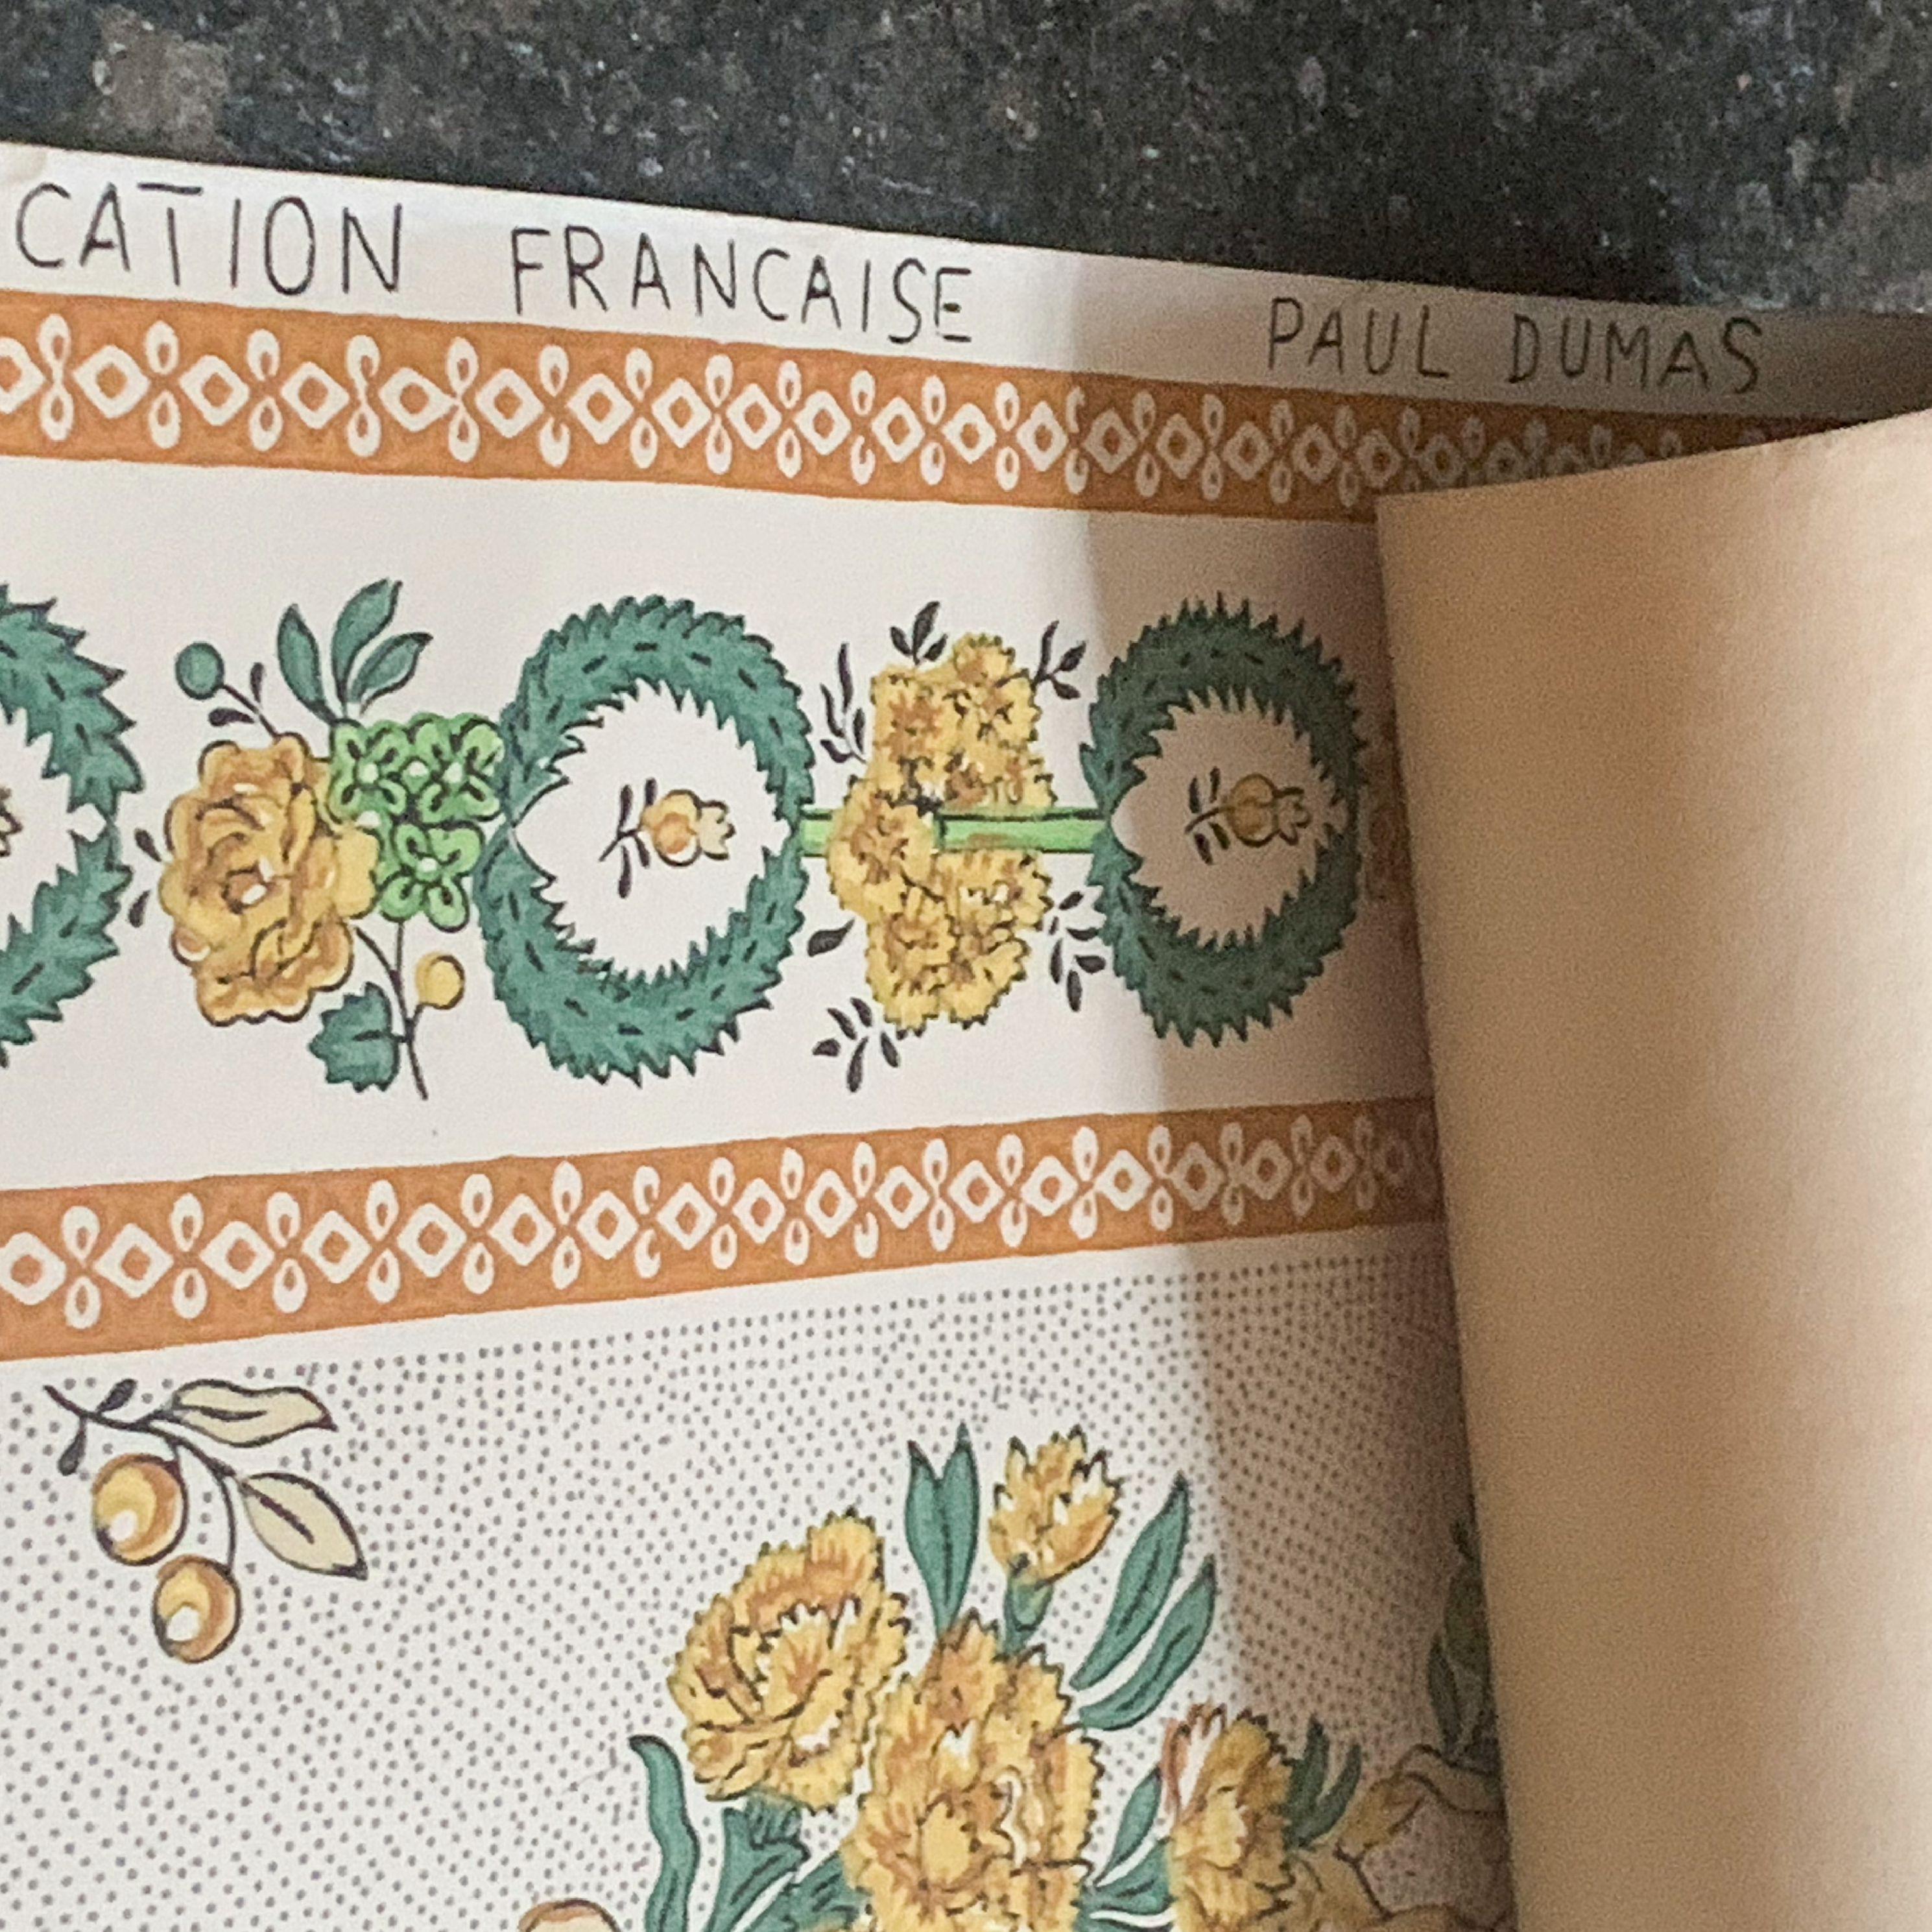 Ancien papier peint provincial français Paul Dumas imprimé à la main, vert, jaune, crème. Impression de couronnes florales dans le style édouardien, vers 1910. Extrêmement rare. 9,8 mètres continus. Il s'agit d'une conception et d'une production